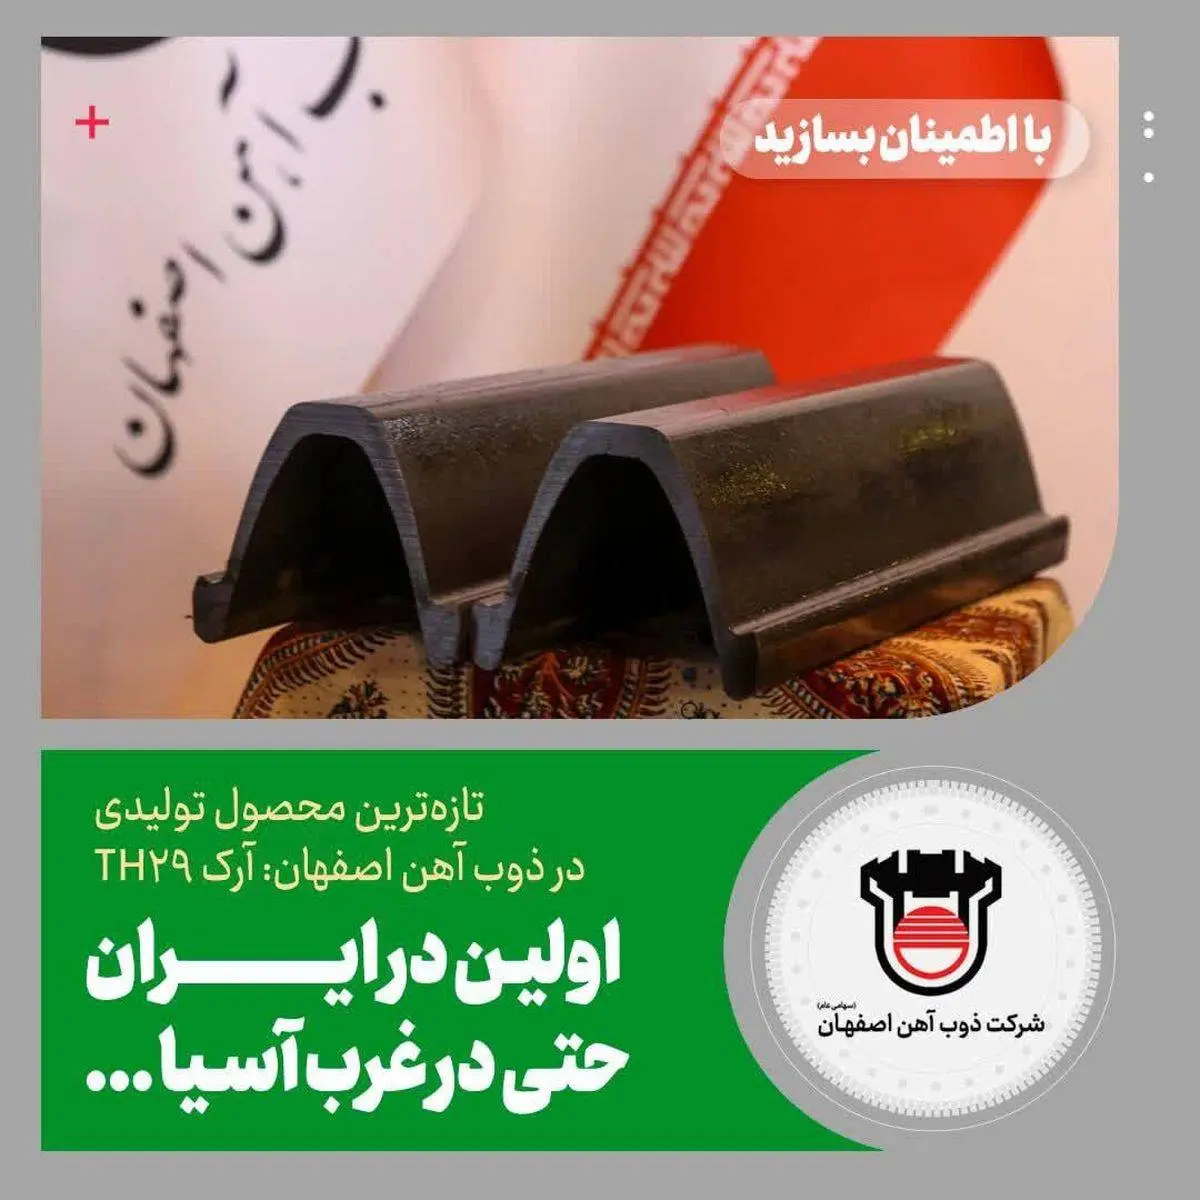 جزییات تازه‌ترین محصول تولیدی در ذوب‌آهن اصفهان: آرک TH۲۹